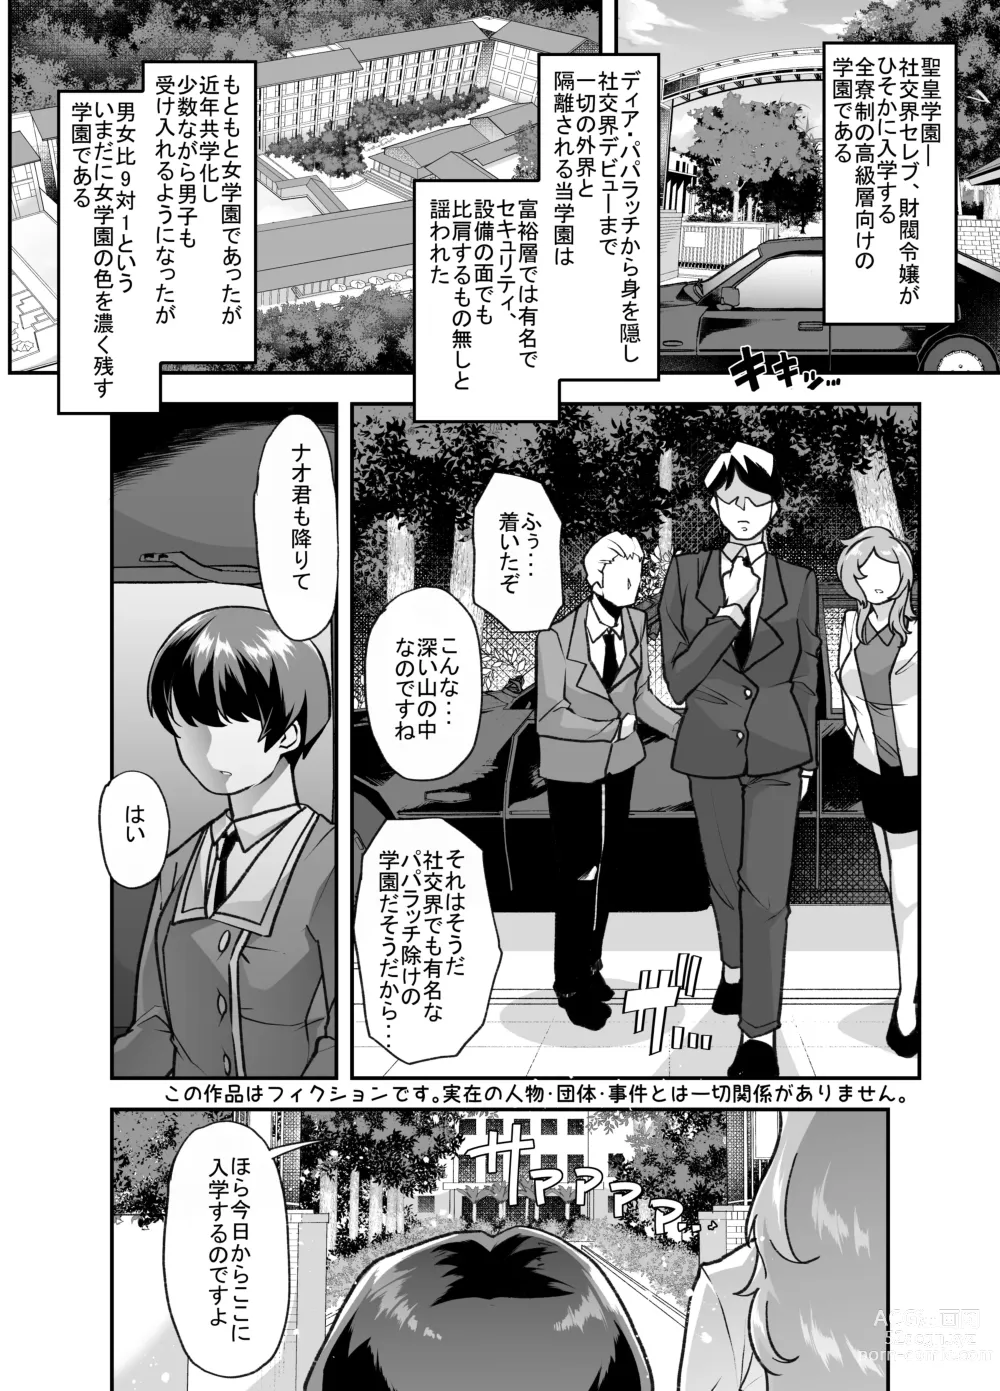 Page 2 of doujinshi Houkago Omutsu Daisuki Club e Youkoso